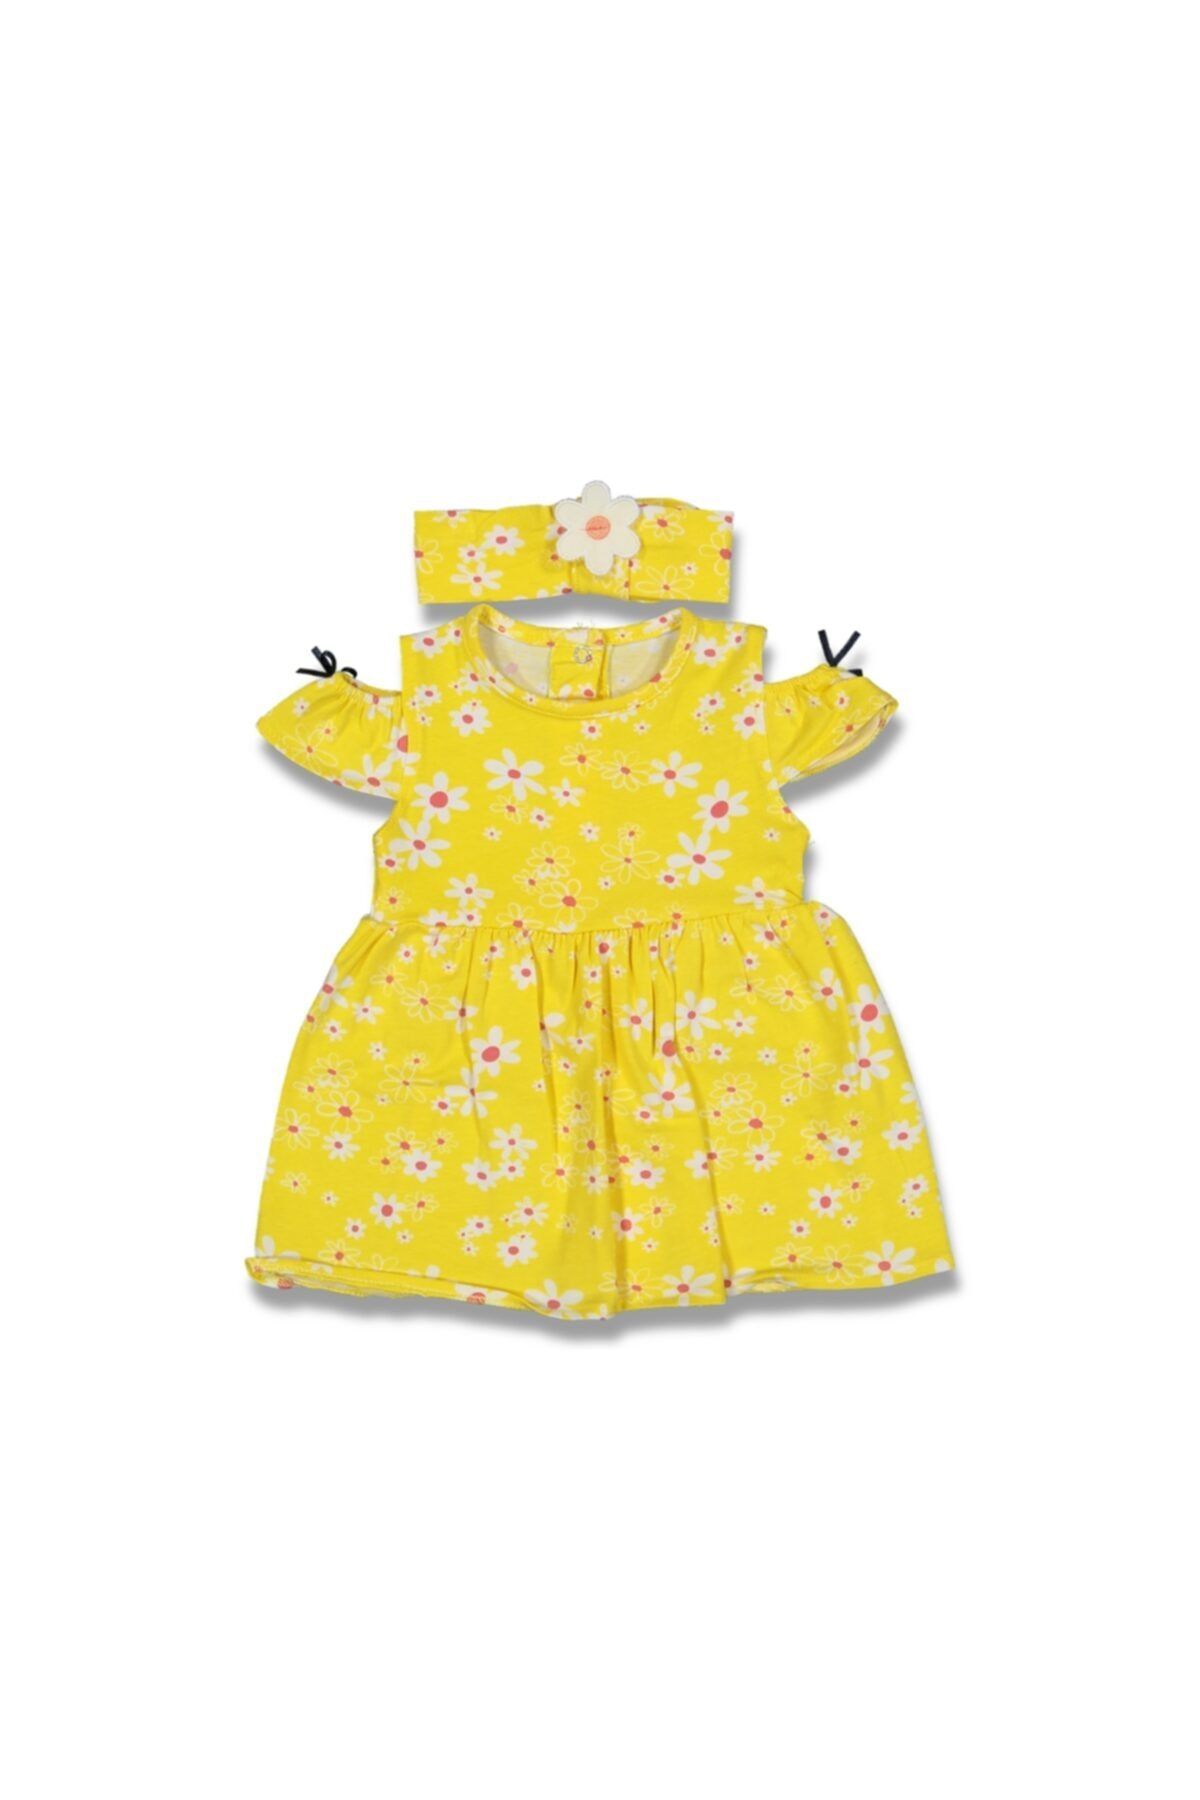 Necix's Papatya Baskılı Kız Bebek Sarı Renk Bandanalı Elbise 100852